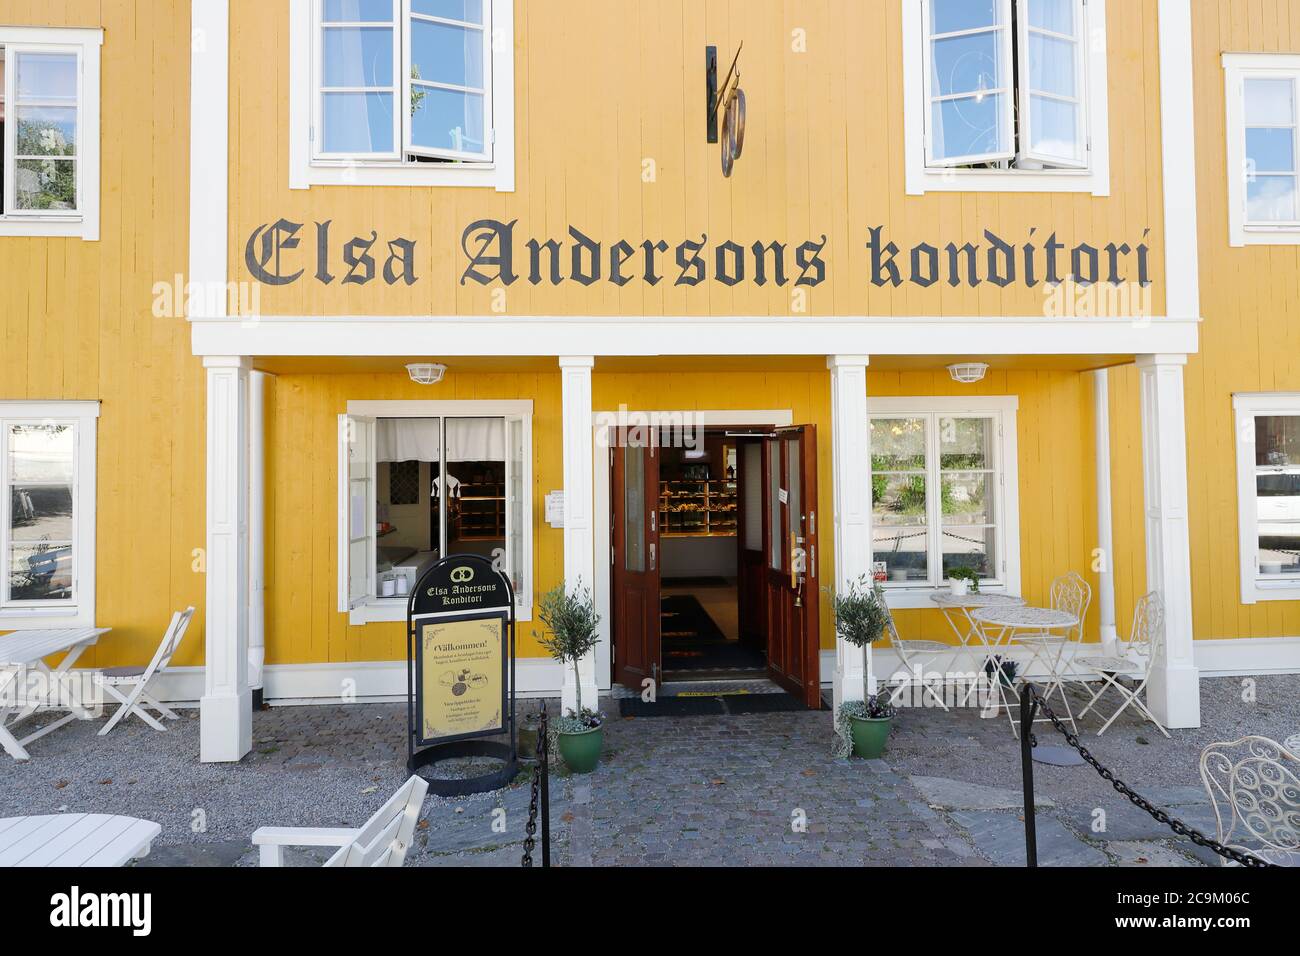 Norberg, Suède - 29 juin 2020 : un bâtiment en bois jaune près de la place abrite la pâtisserie Elsa Andersons. Banque D'Images